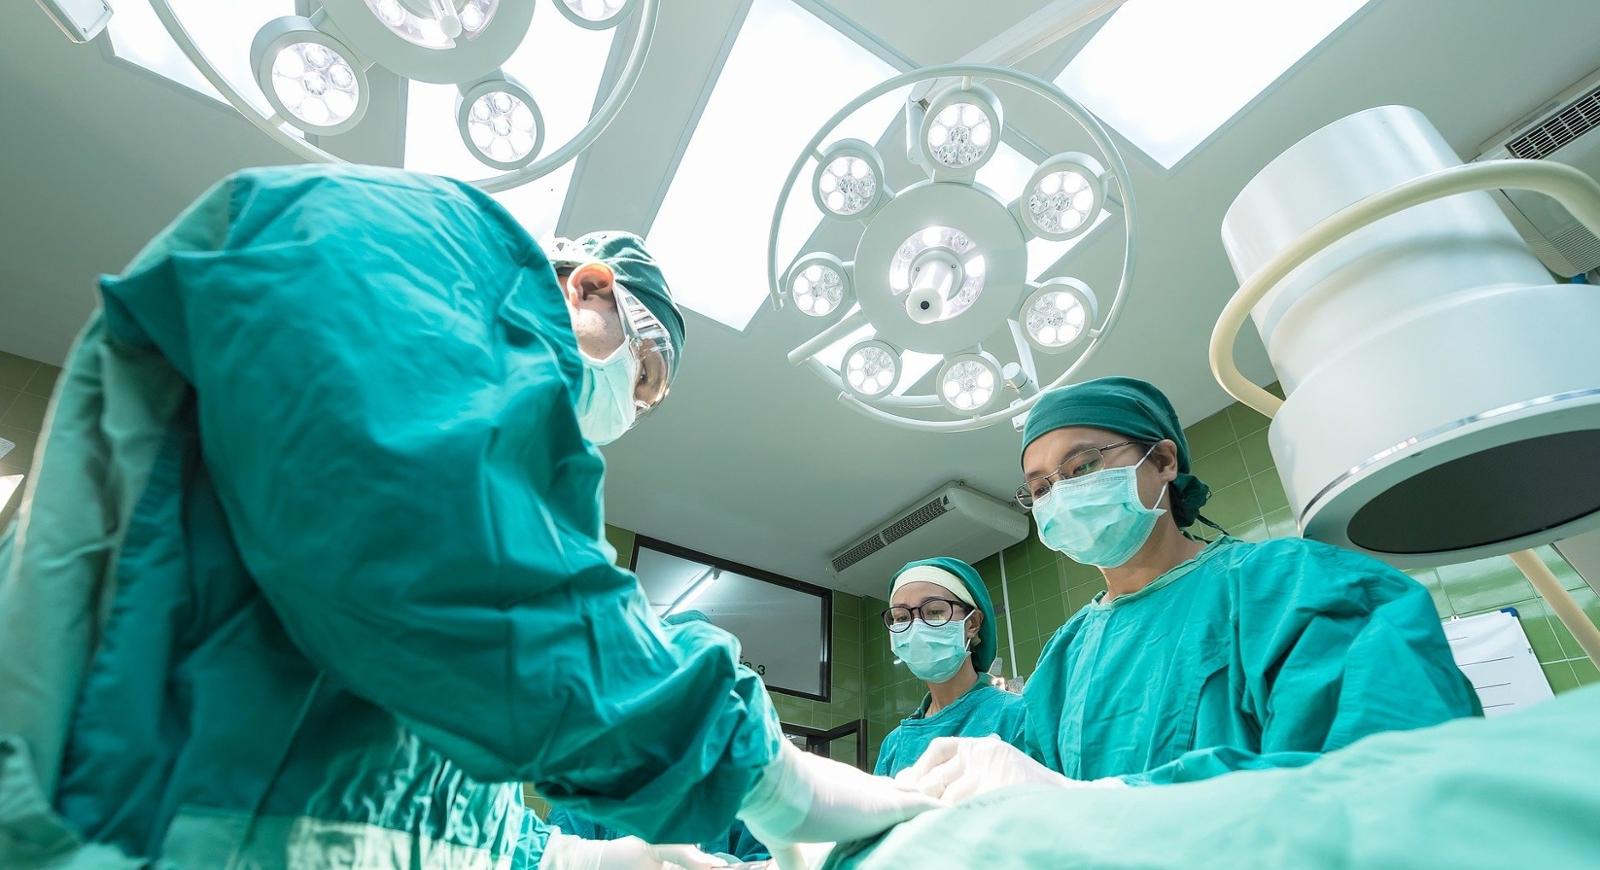 上面的照片显示，外科医生俯身在手术台上进行手术